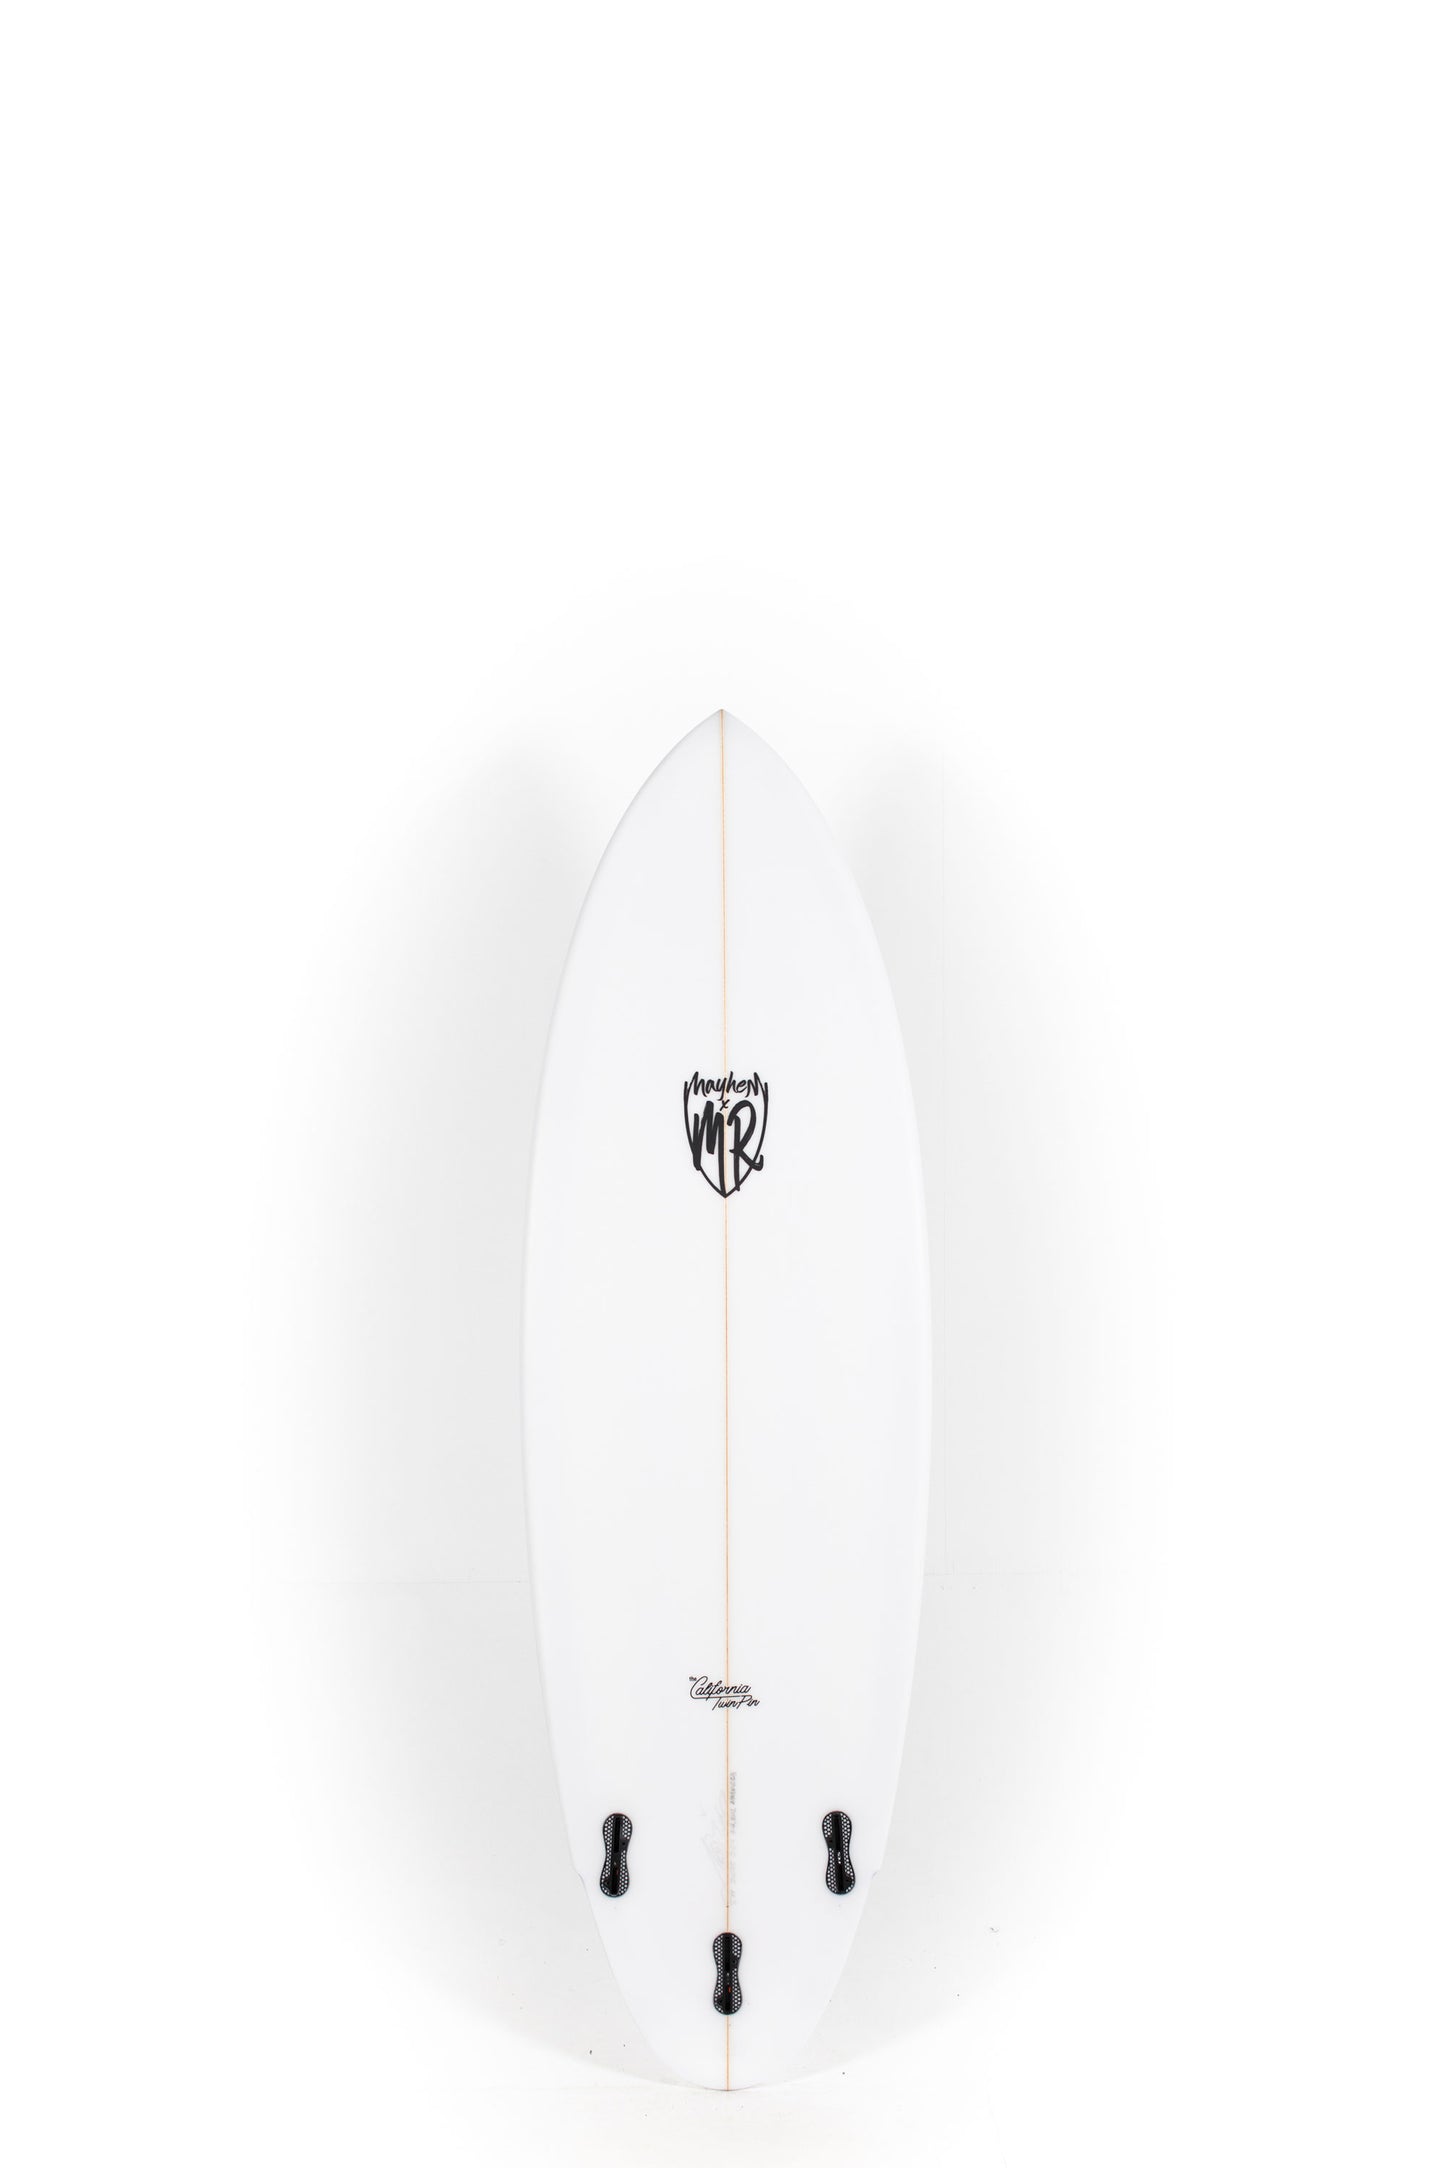 Pukas Surf Shop - Lost Surfboards - CALIFORNIA TWIN PIN by Matt Biolos - 5'11" x 20,75 x 2,61 x 34,81L - MM00653